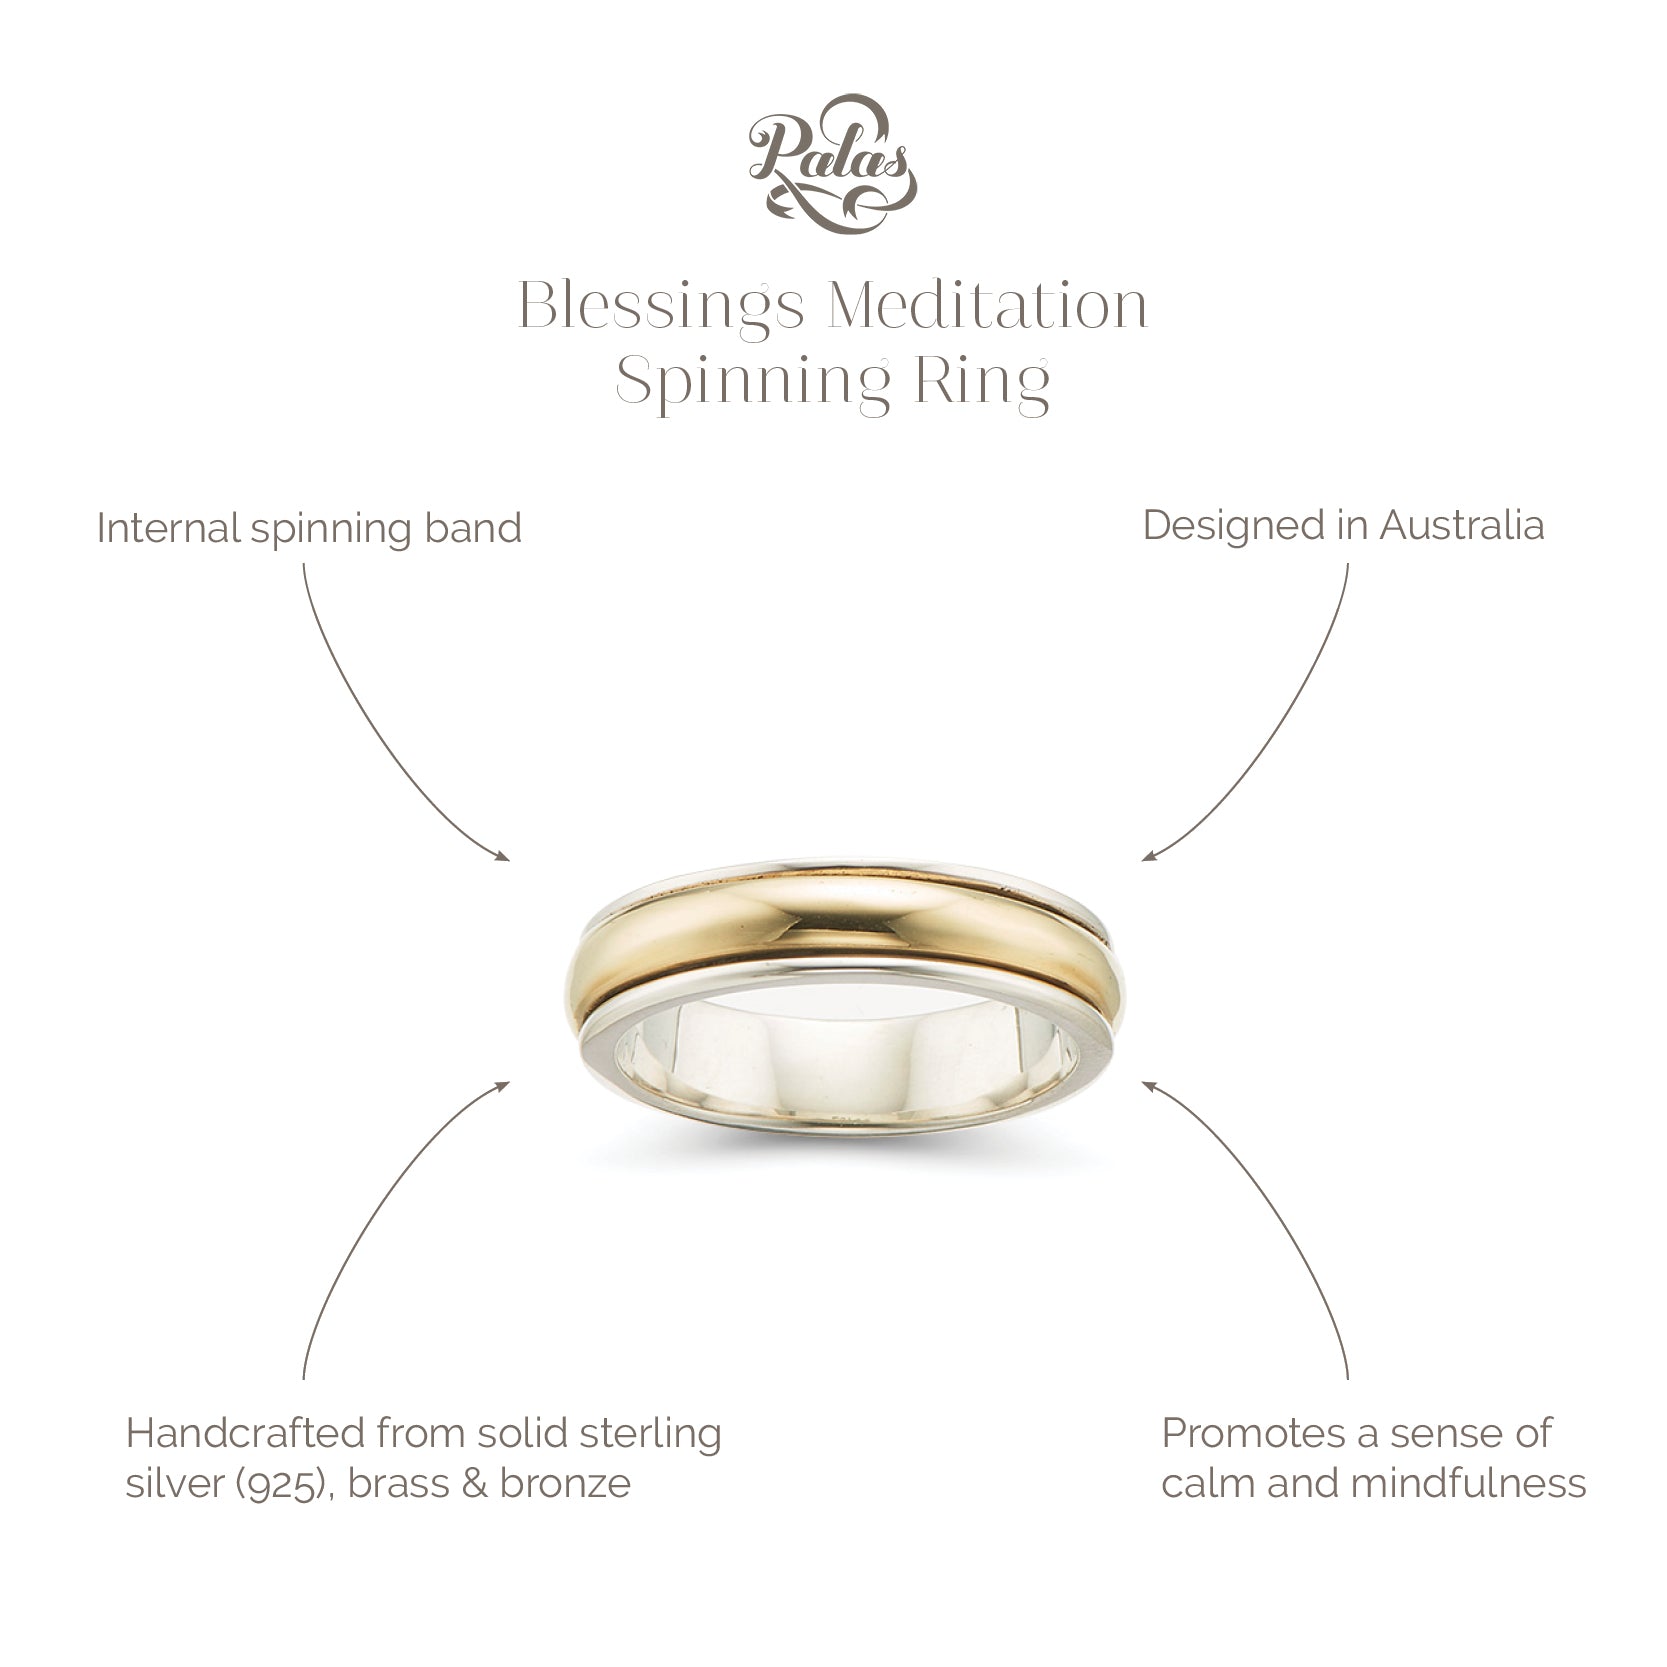 Blessings meditation spinning ring